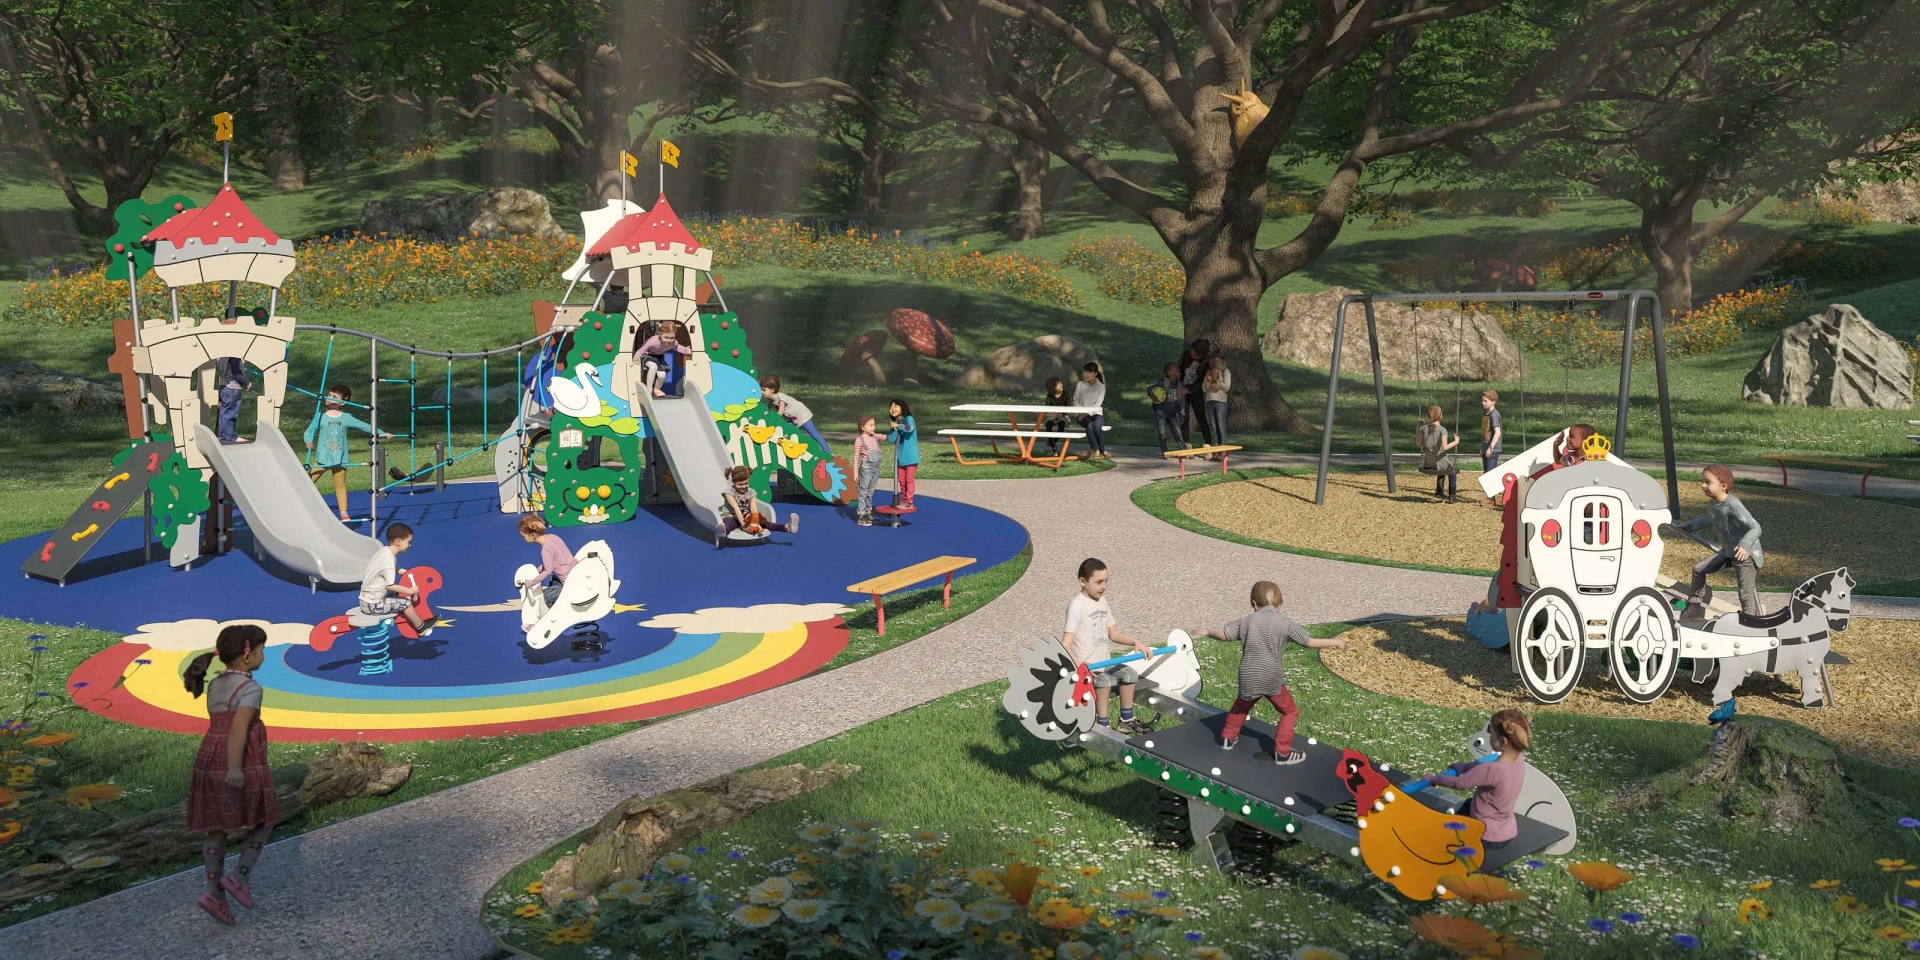 Designvorschlag eines Spielplatzes mit Märchenthema